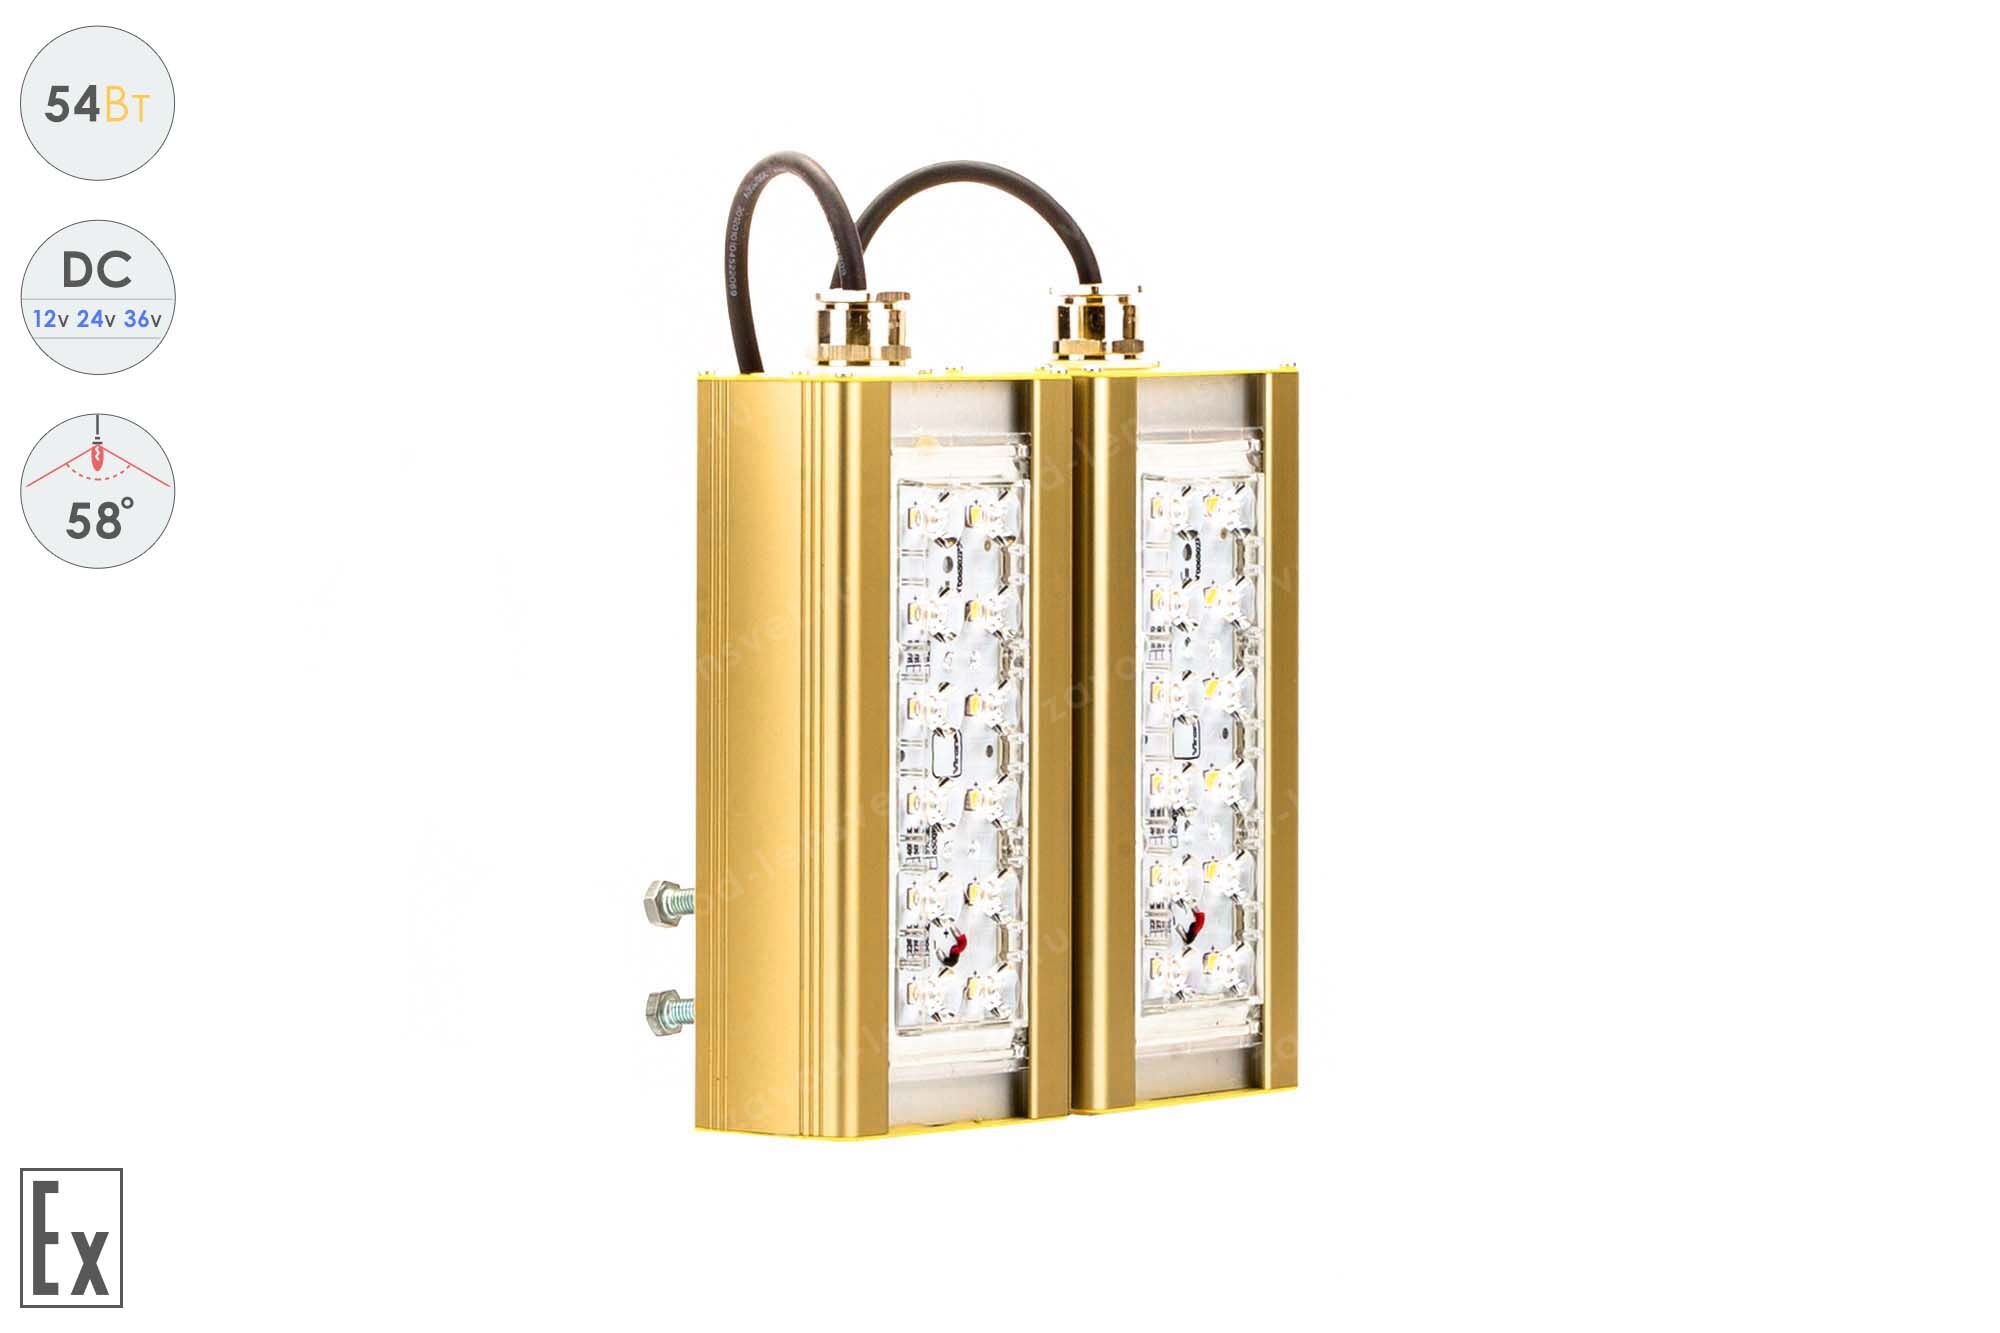 Светодиодный светильник Низковольтный Прожектор Взрывозащищенный GOLD, консоль K-2, 54 Вт, 58°